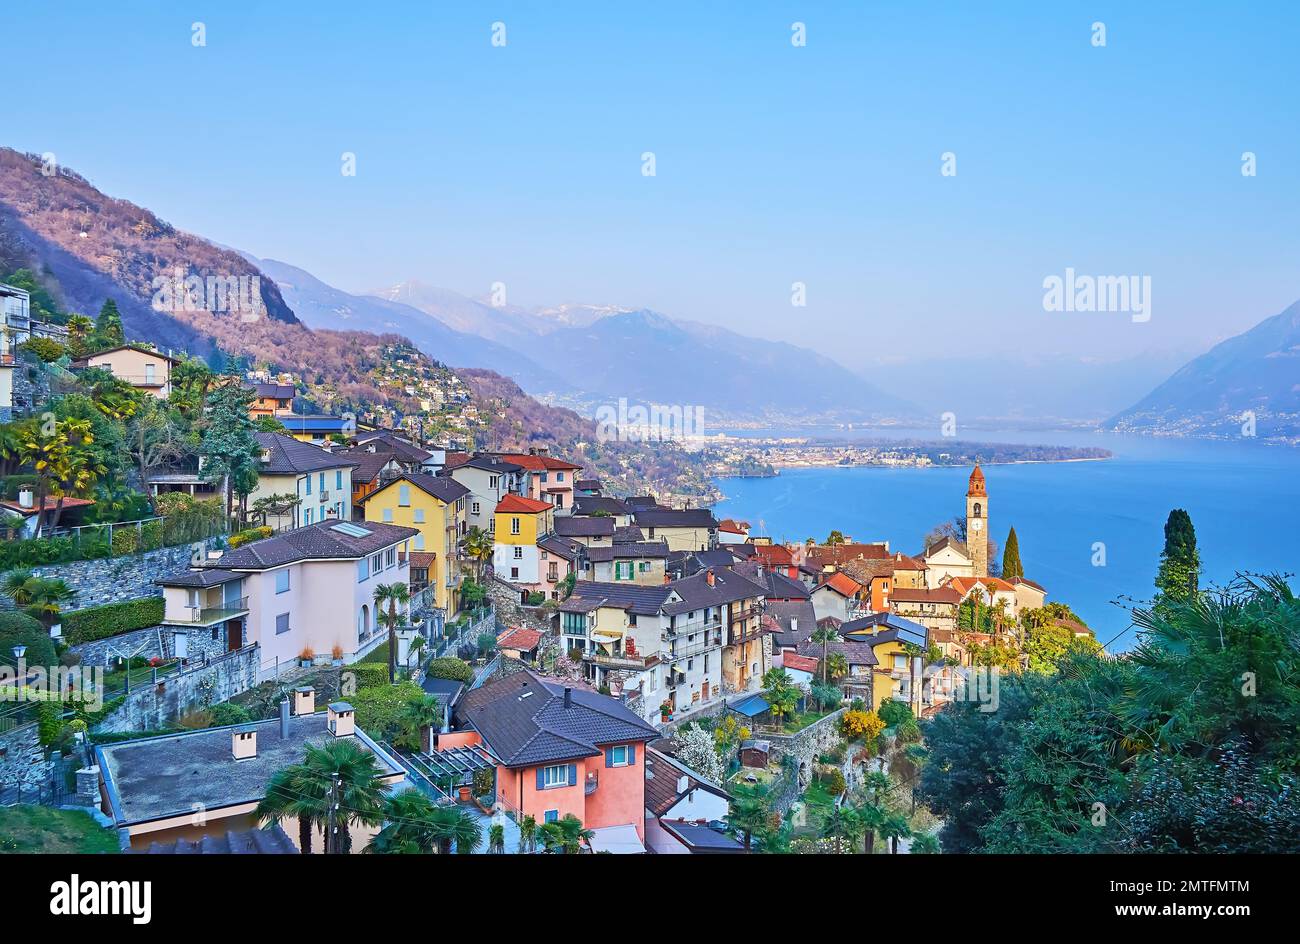 El hermoso paisaje alpino con casas de ronco sopra Ascona, azul lago Maggiore y montañas nebulosas a la luz del sol de la tarde, Suiza Foto de stock